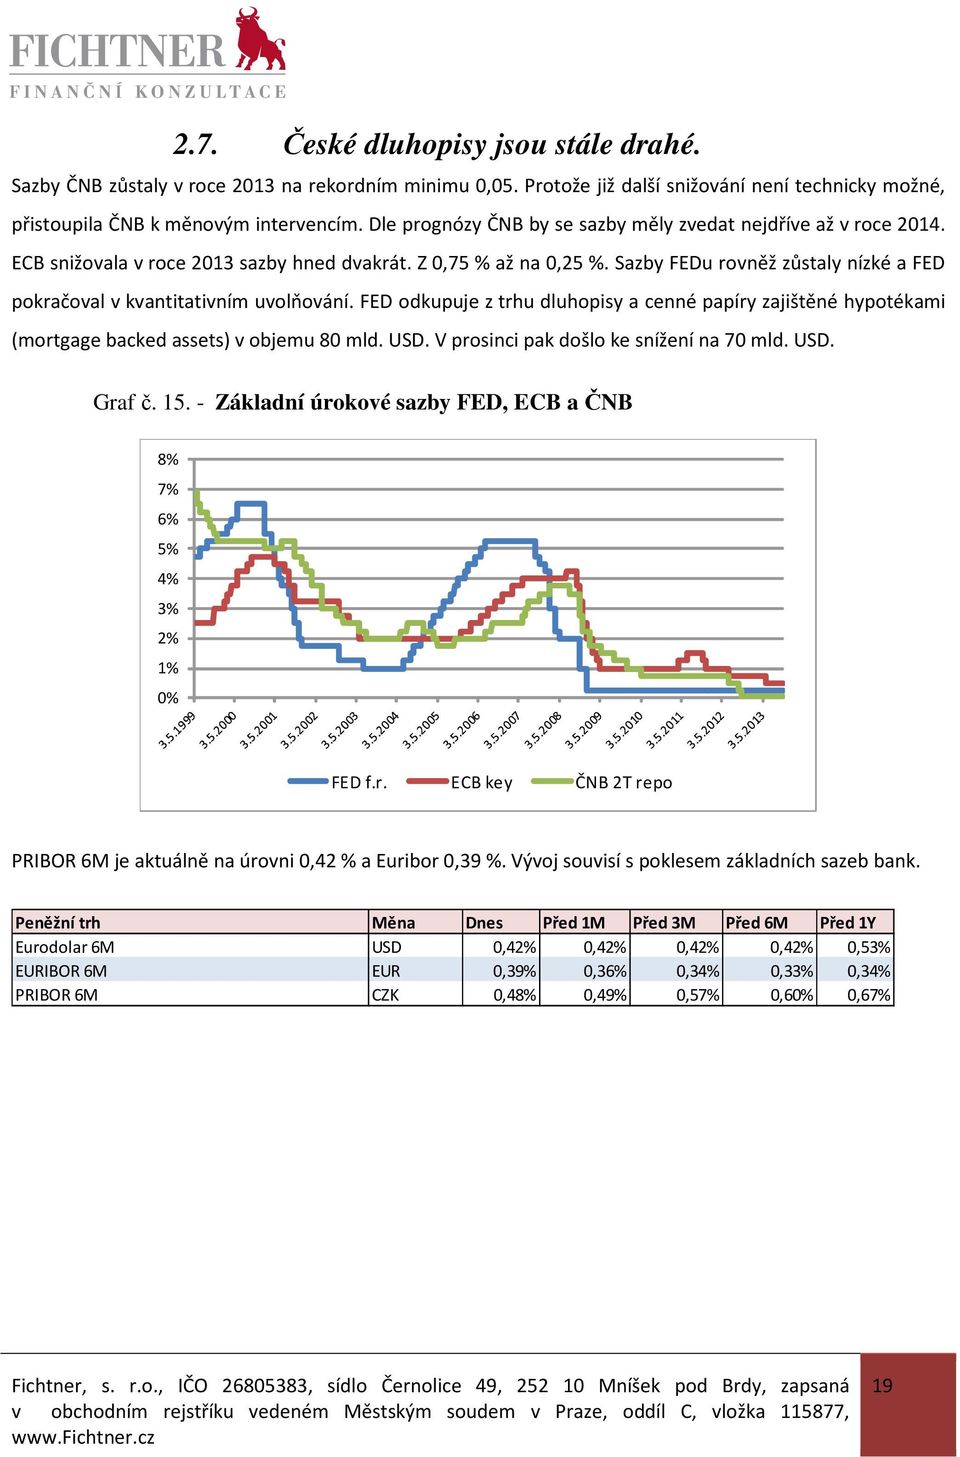 Sazby FEDu rovněž zůstaly nízké a FED pokračoval v kvantitativním uvolňování. FED odkupuje z trhu dluhopisy a cenné papíry zajištěné hypotékami (mortgage backed assets) v objemu 80 mld. USD.